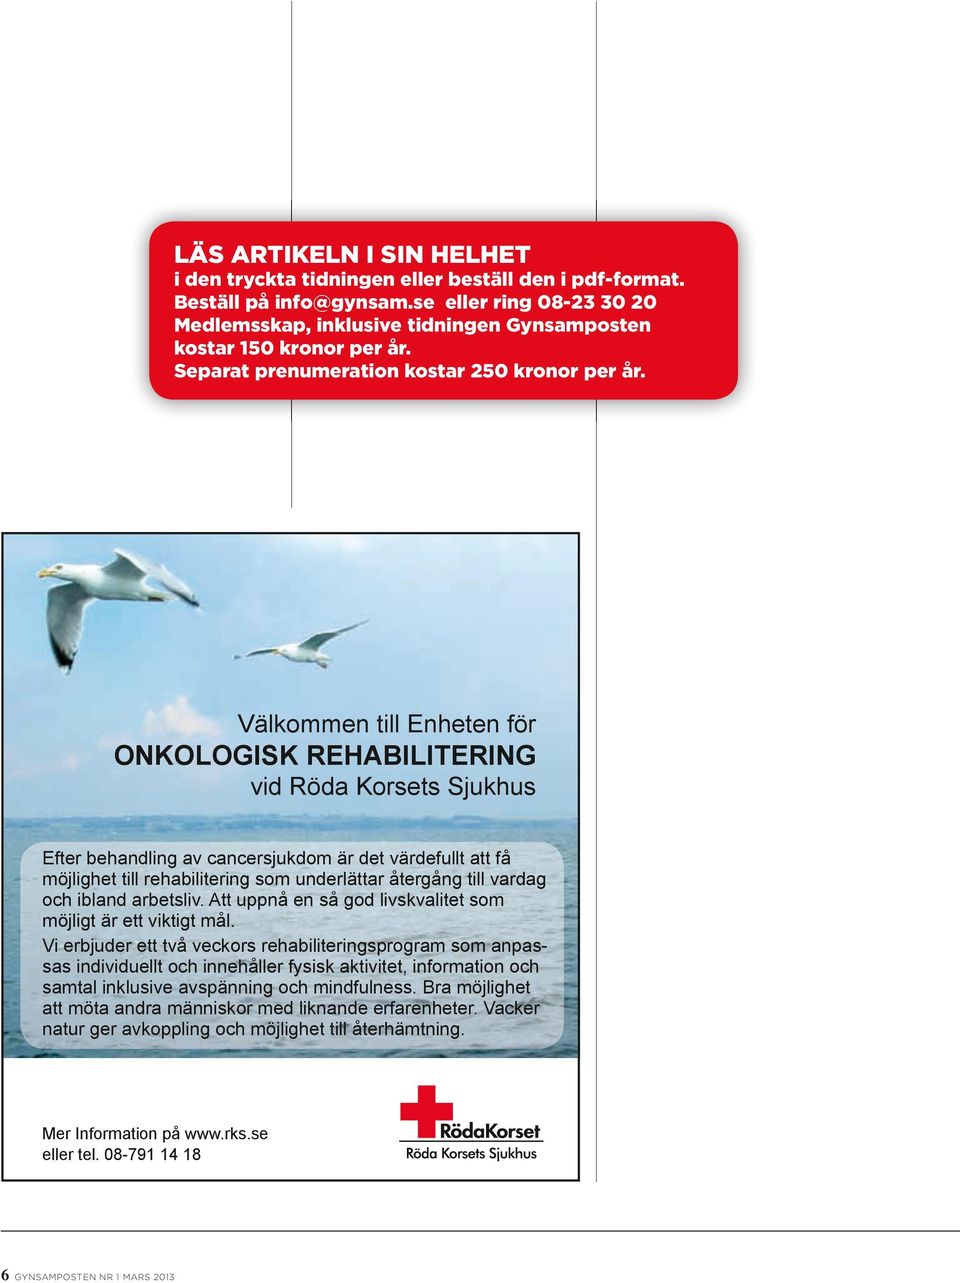 Välkommen till Enheten för ONKOLOGISK REHABILITERING vid Röda Korsets Sjukhus Välkommen till Enheten för onkologisk rehabilitering vid Röda Korsets Sjukhus Efter behandling av cancersjukdom är det